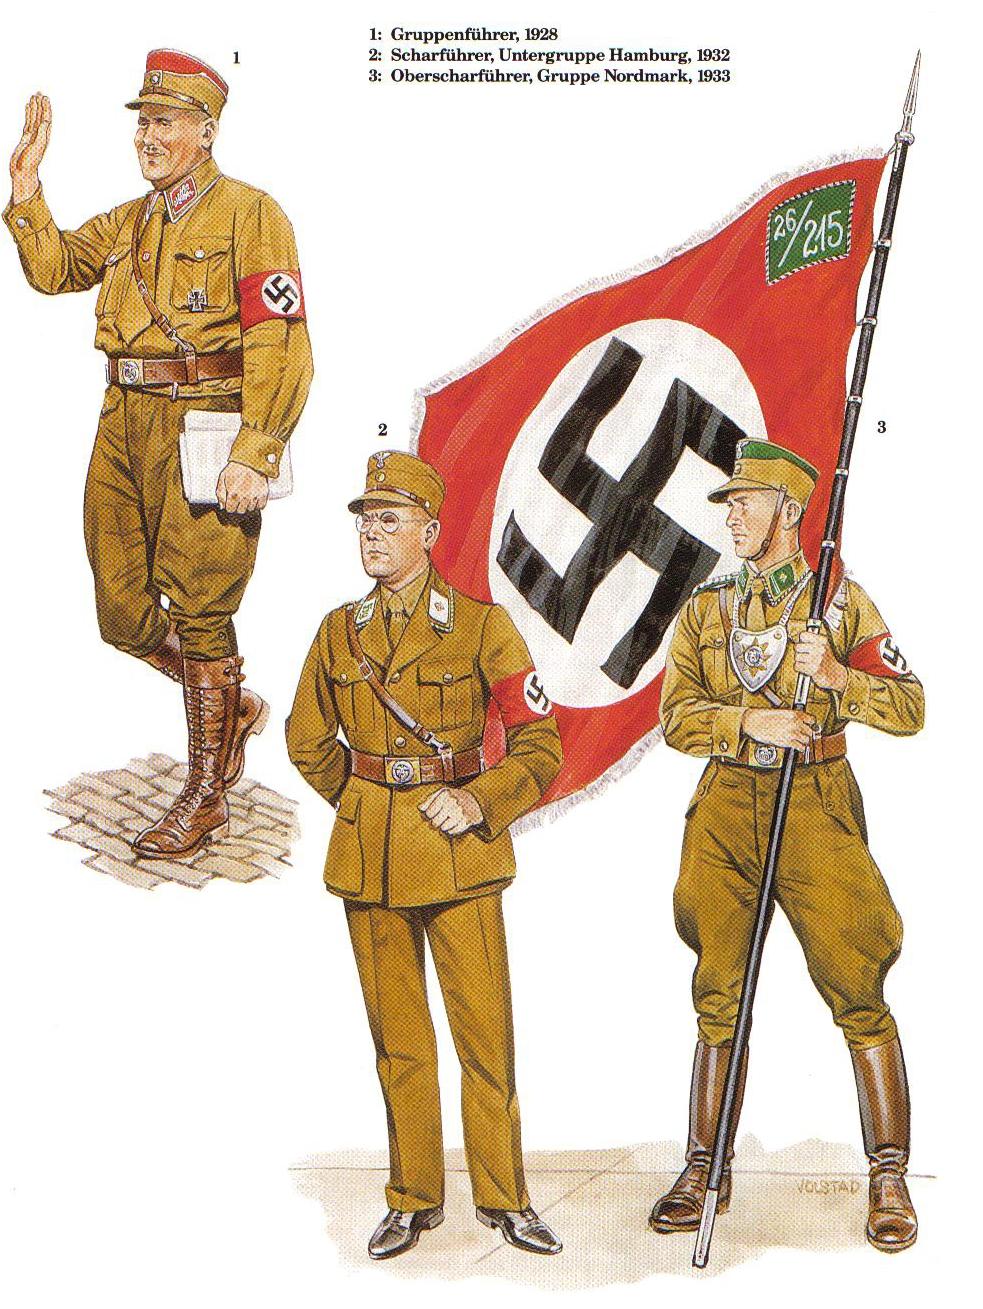 Фашистские отряды. Са штурмовые отряды НСДАП. Штурмовые отряды са Гитлера 1921-1945. Са штурмовые отряды НСДАП форма. Штурмовые отряды са Гитлера 1921-1945 форма.